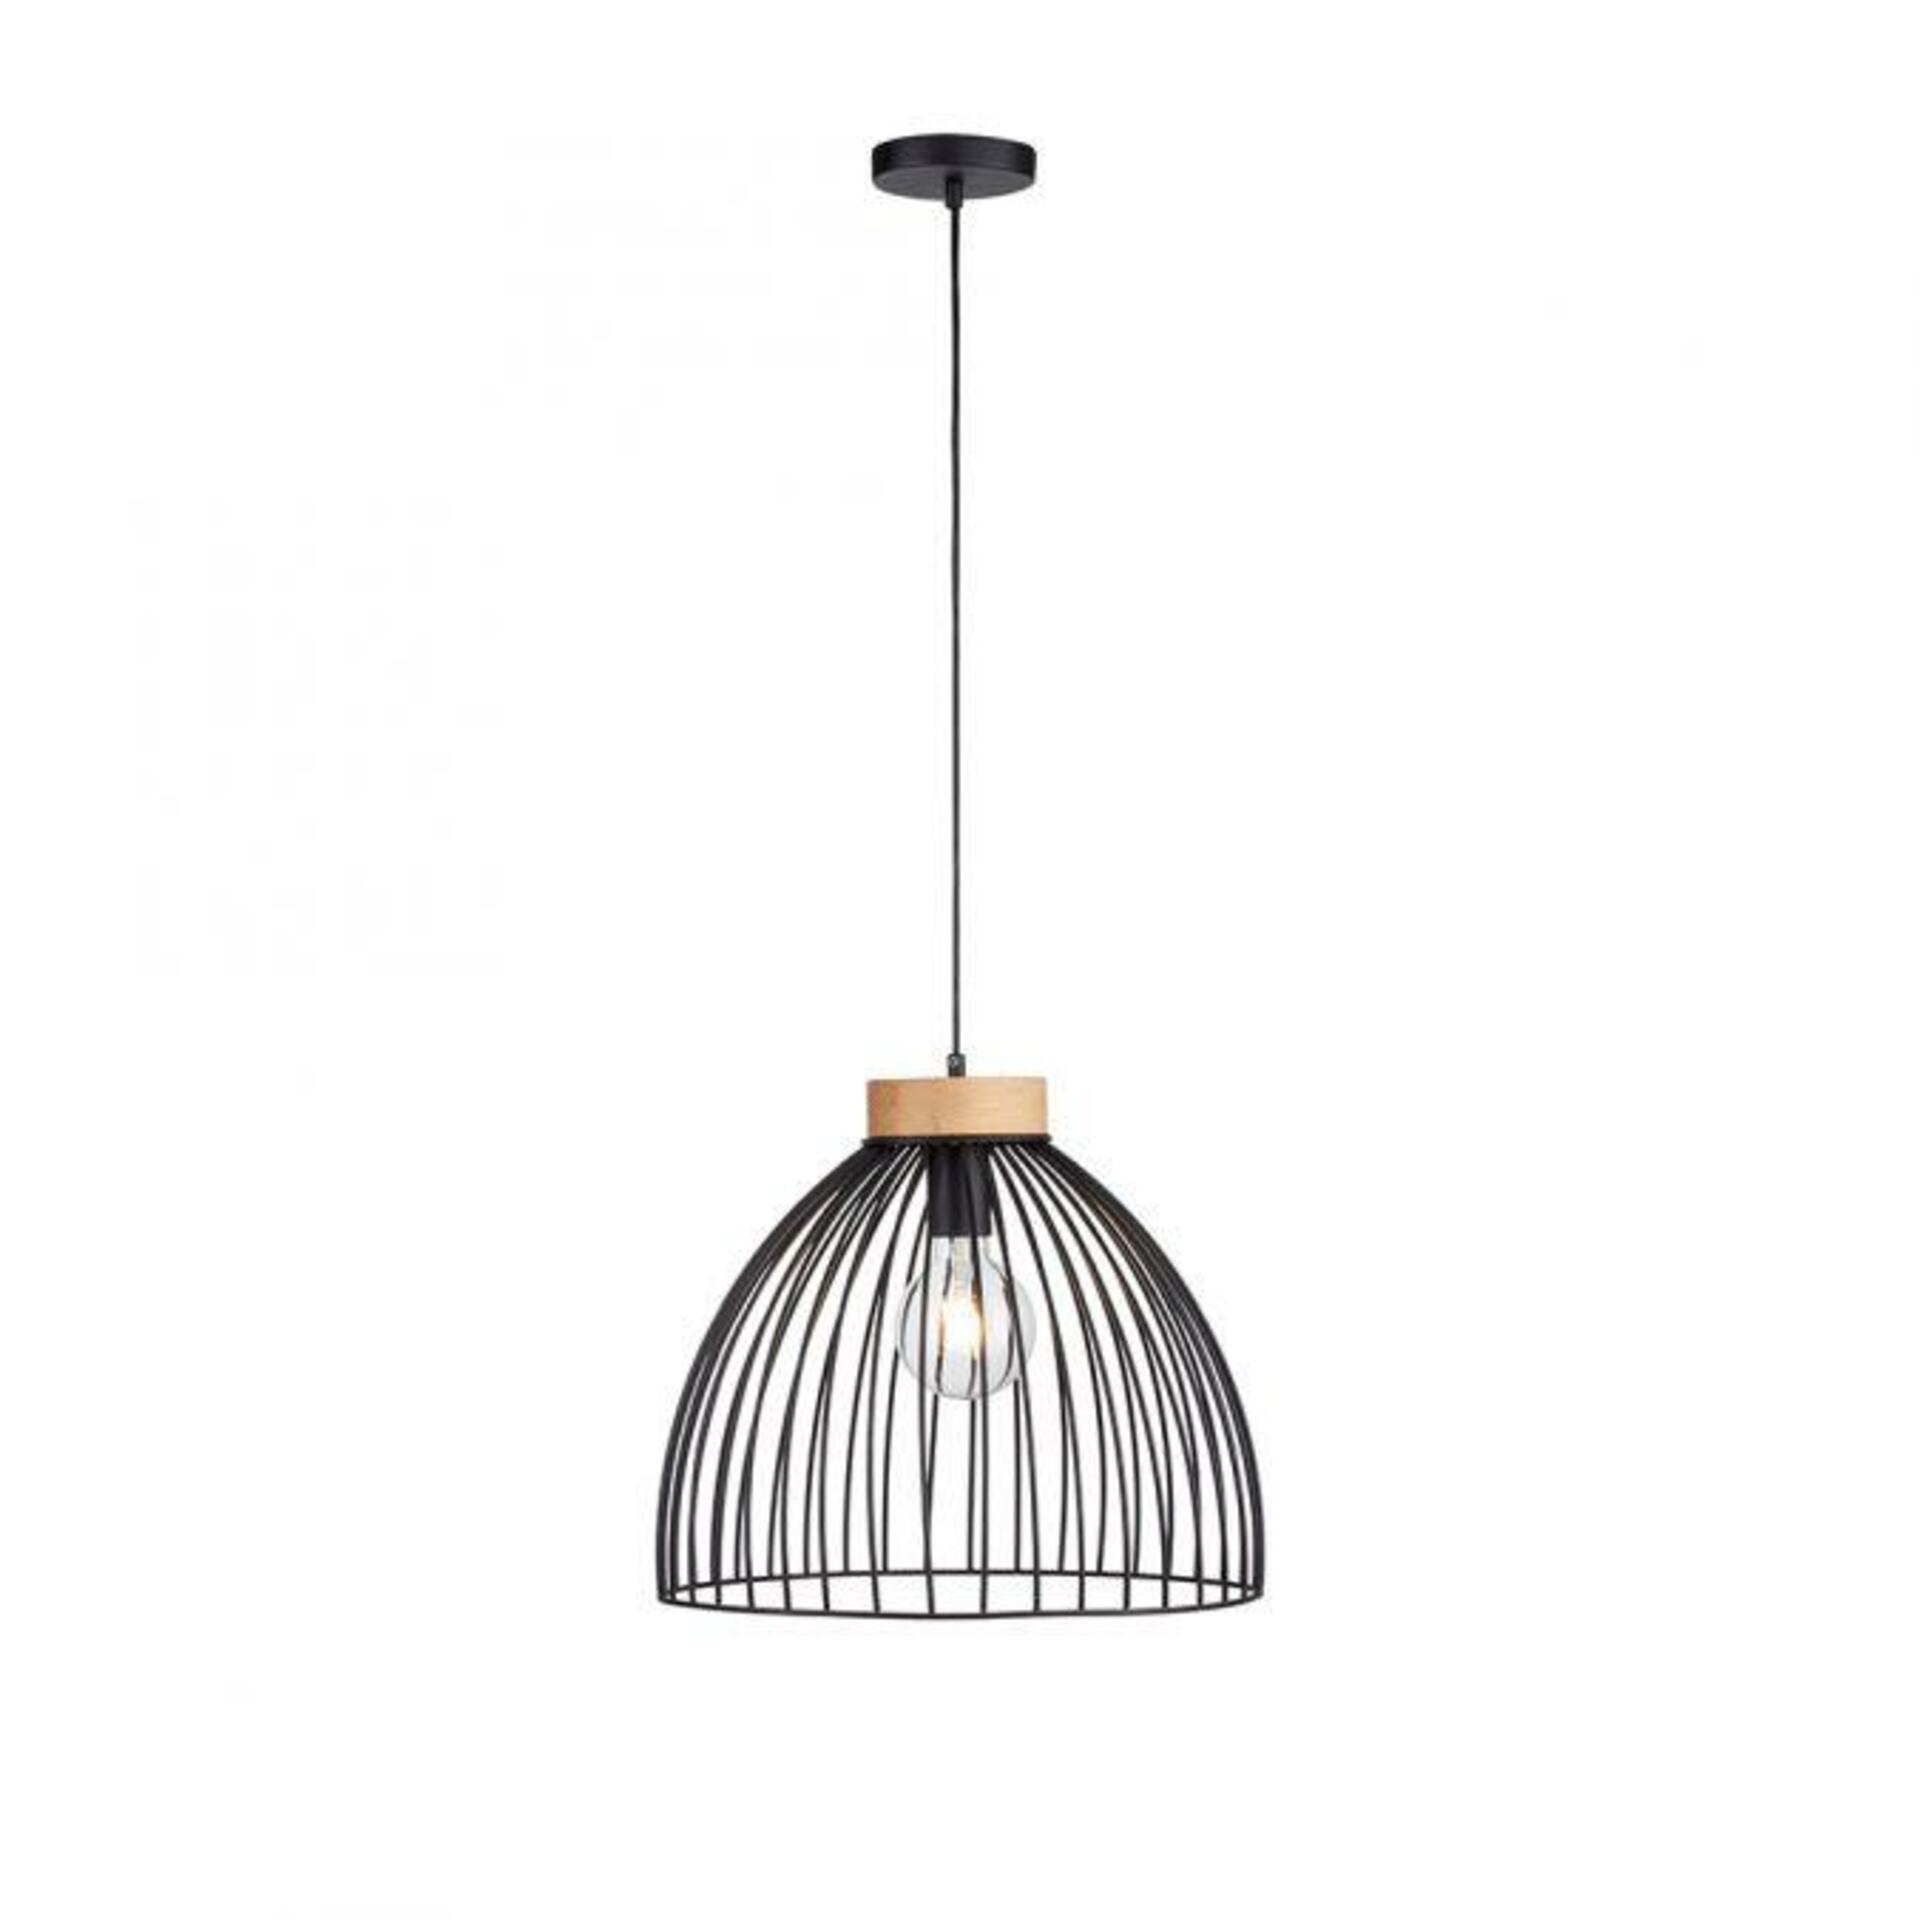 LEUCHTEN DIREKT is JUST LIGHT závěsné svítidlo LAMI 1 ramenné, dřevo, černá, kovové stínítko, industriální styl